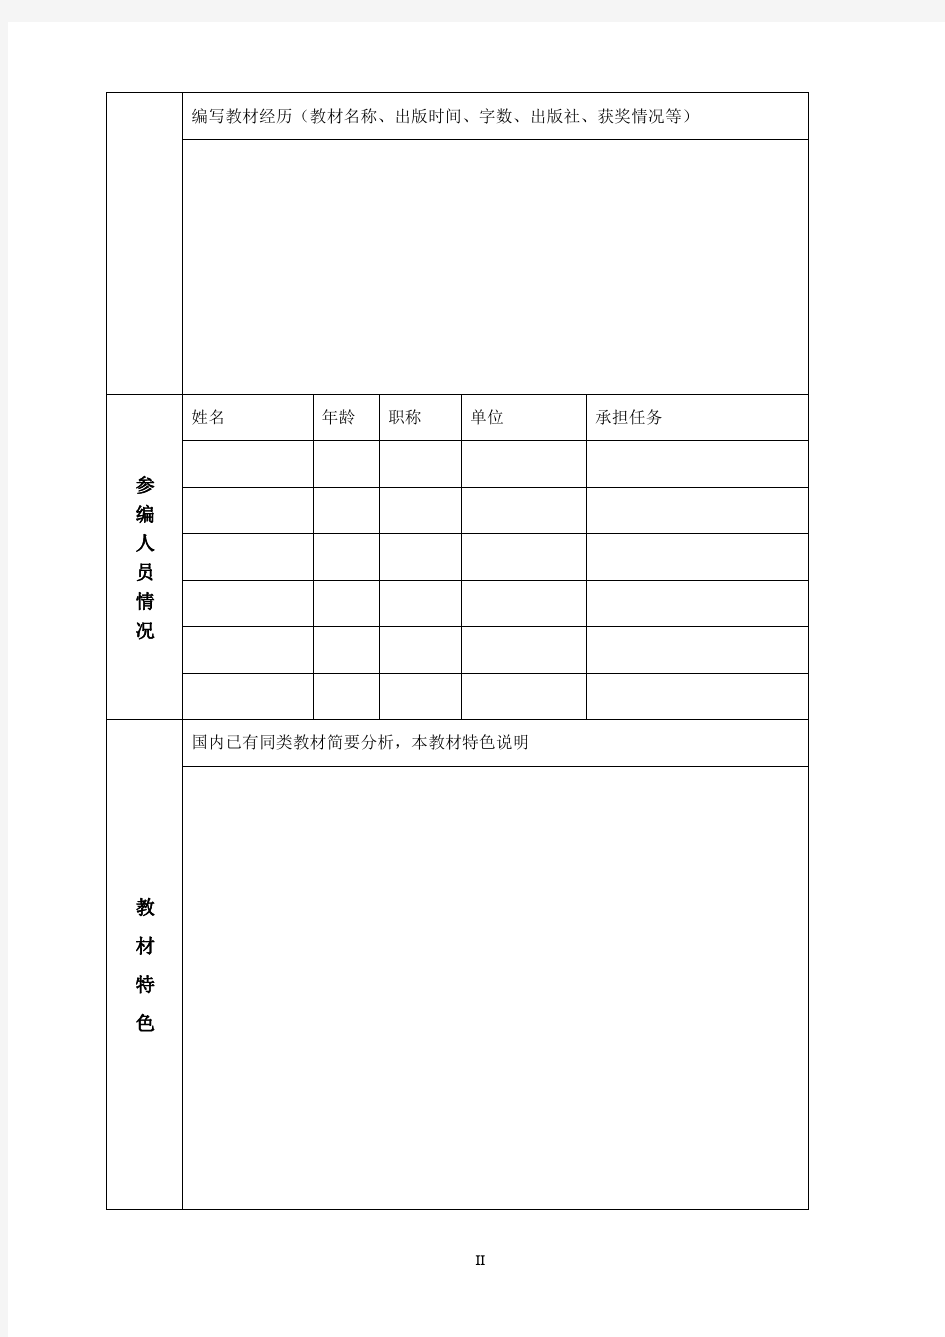 华东理工大学优秀教材出版基金申请表(2015版)